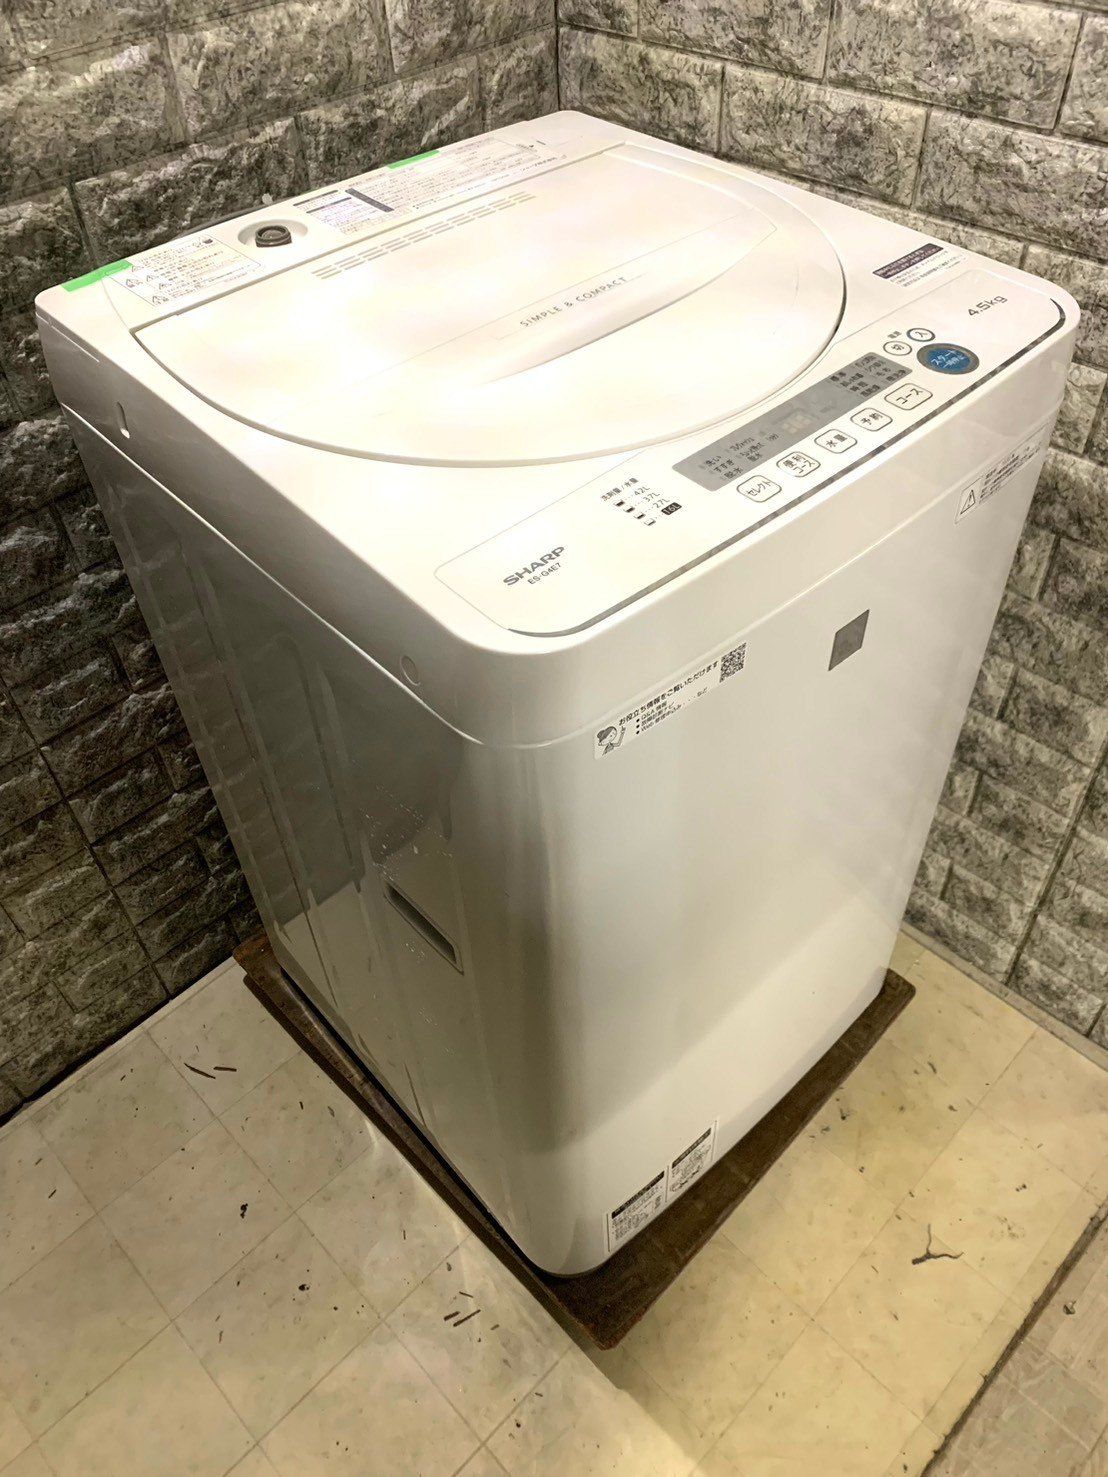 9,800円SHARP 4.5kg 洗濯機 一人暮らし向け 2019年製【地域限定配送無料】